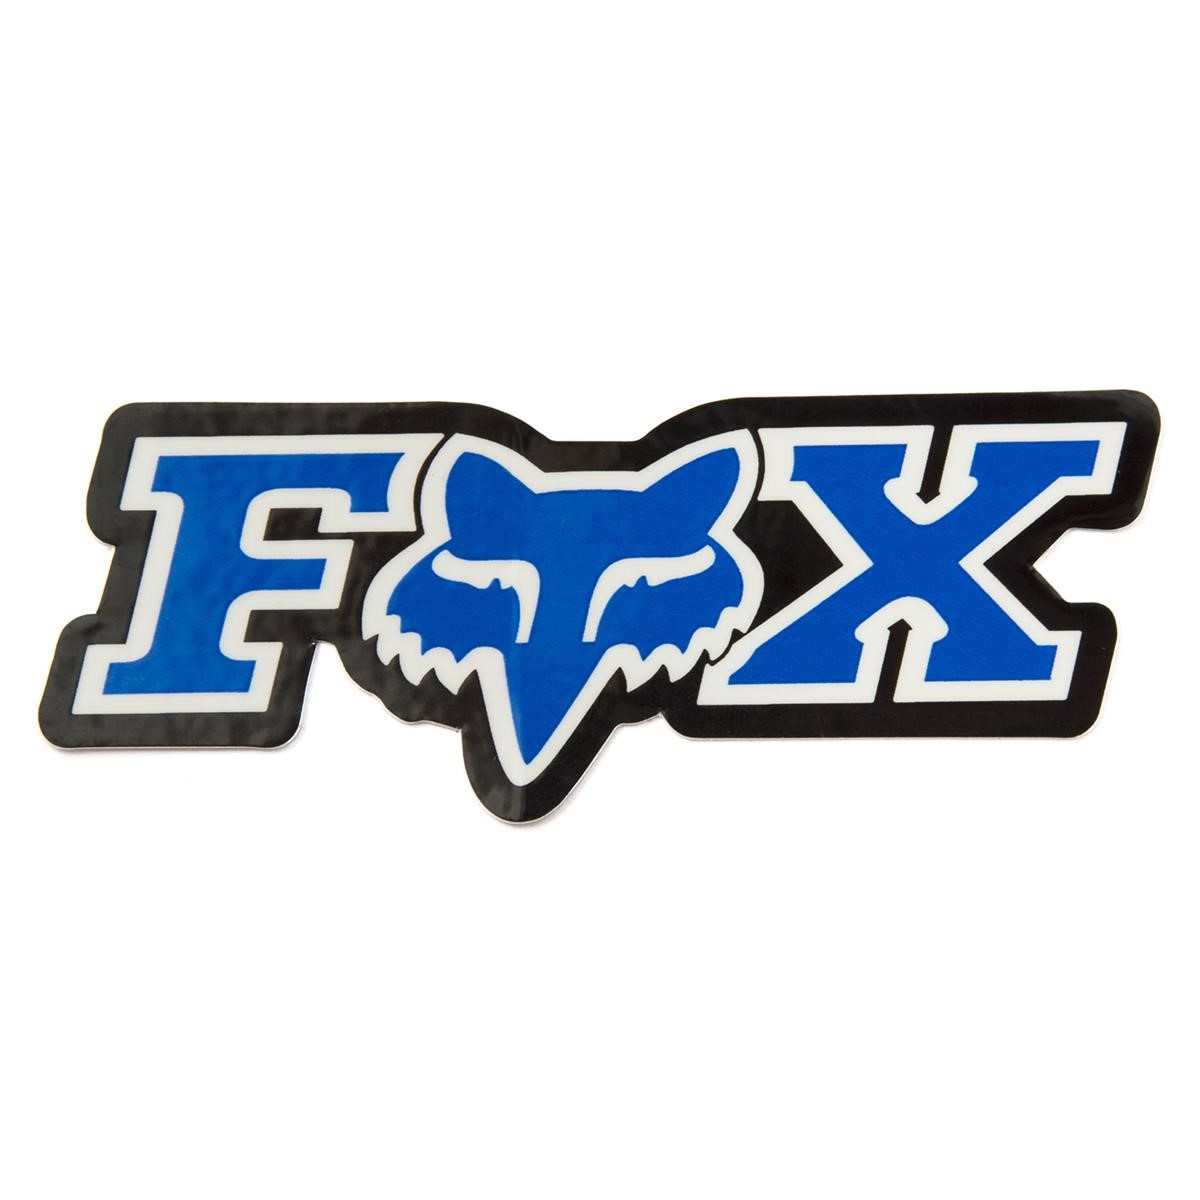 Fox Autocollants Corporate Blue - 7.5 cm